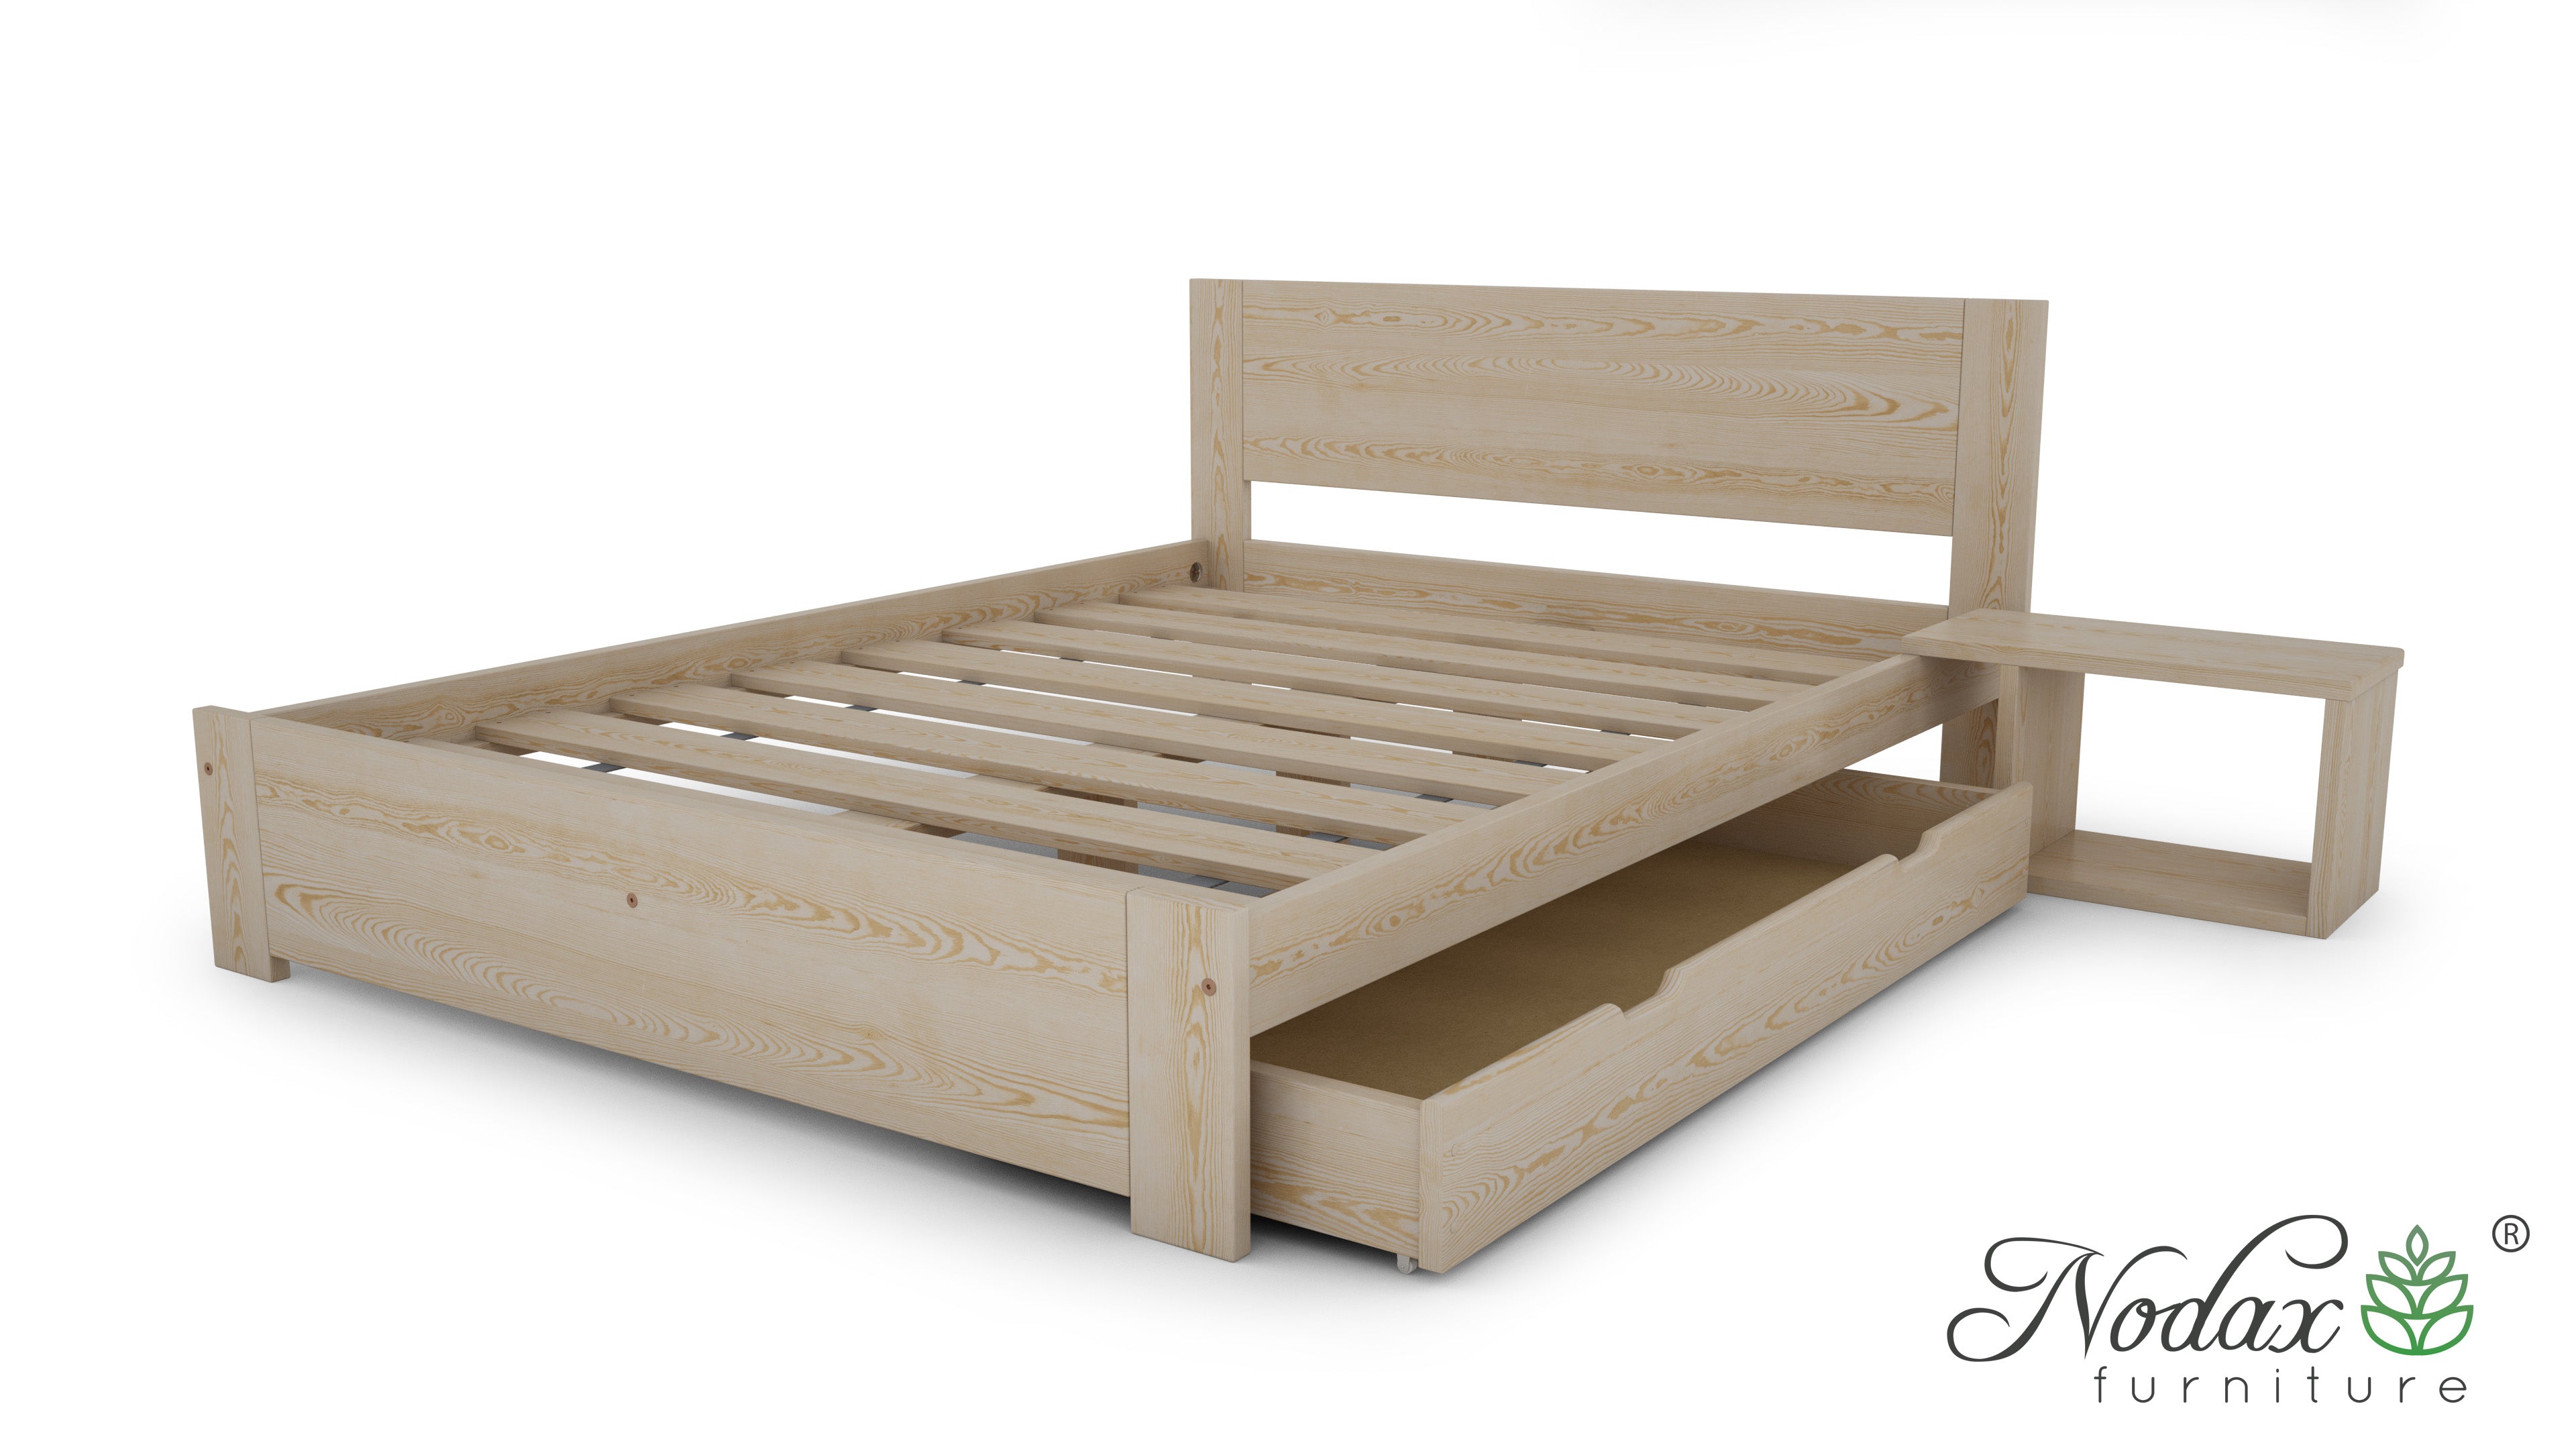 Online-beds-under-bed-drawer-wooden-furniture